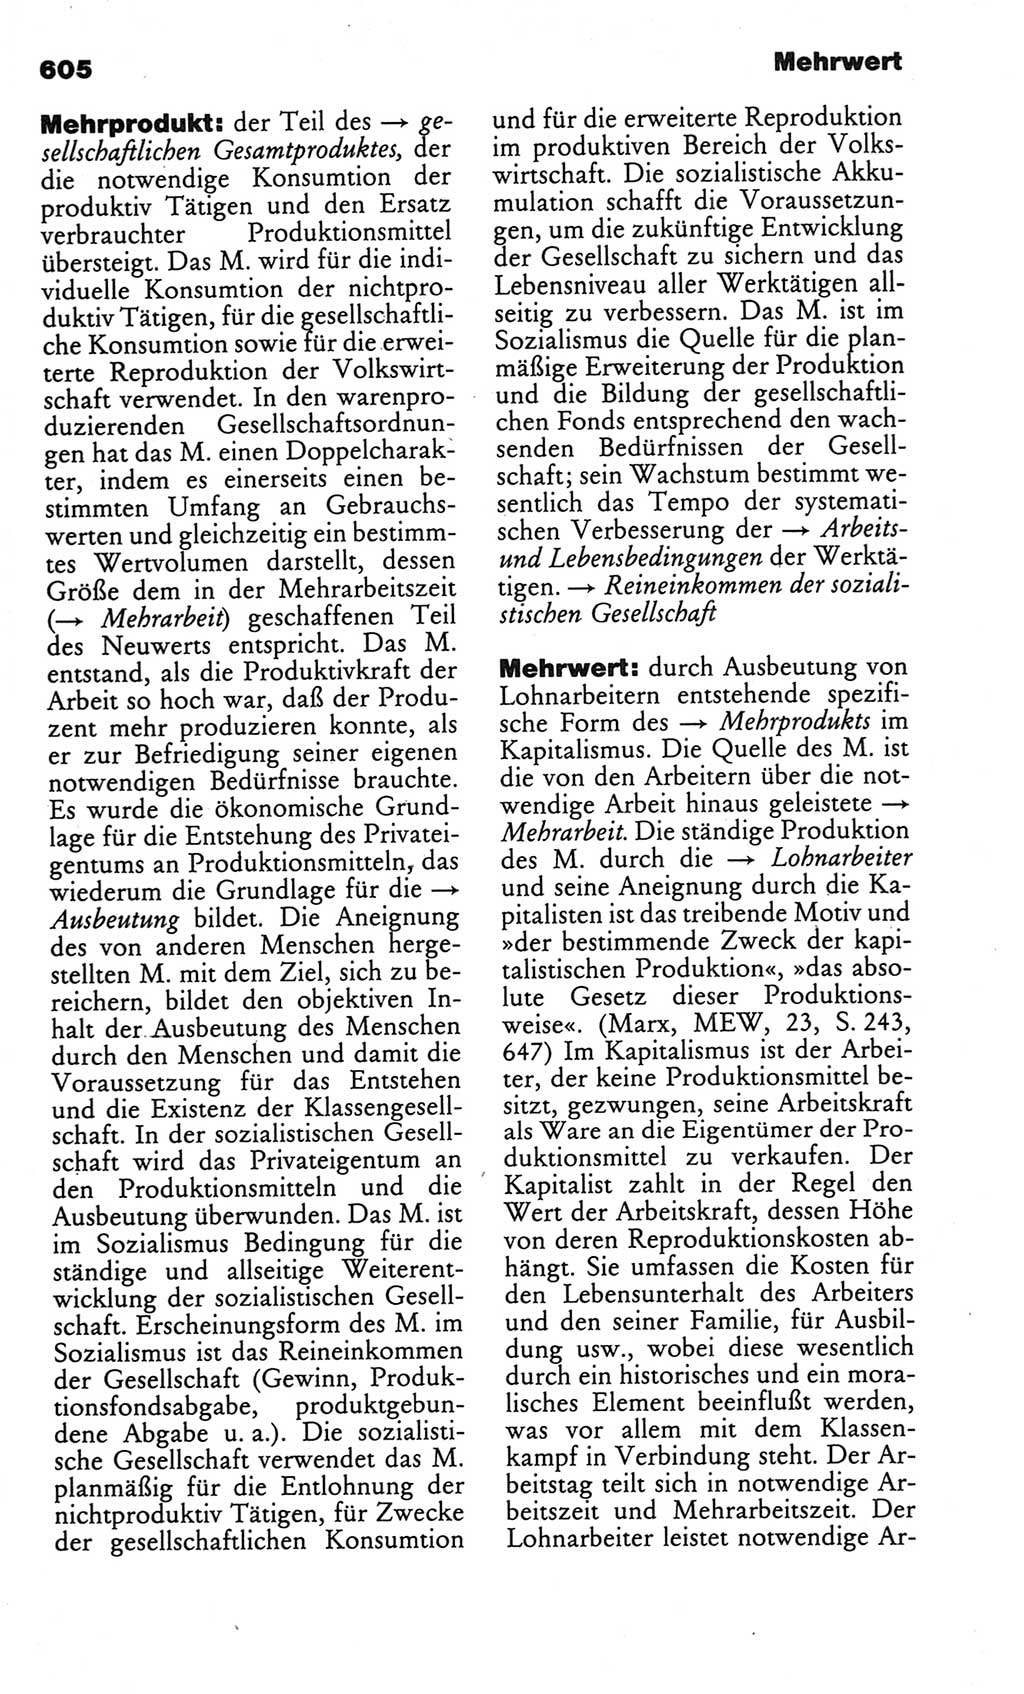 Kleines politisches Wörterbuch [Deutsche Demokratische Republik (DDR)] 1986, Seite 605 (Kl. pol. Wb. DDR 1986, S. 605)